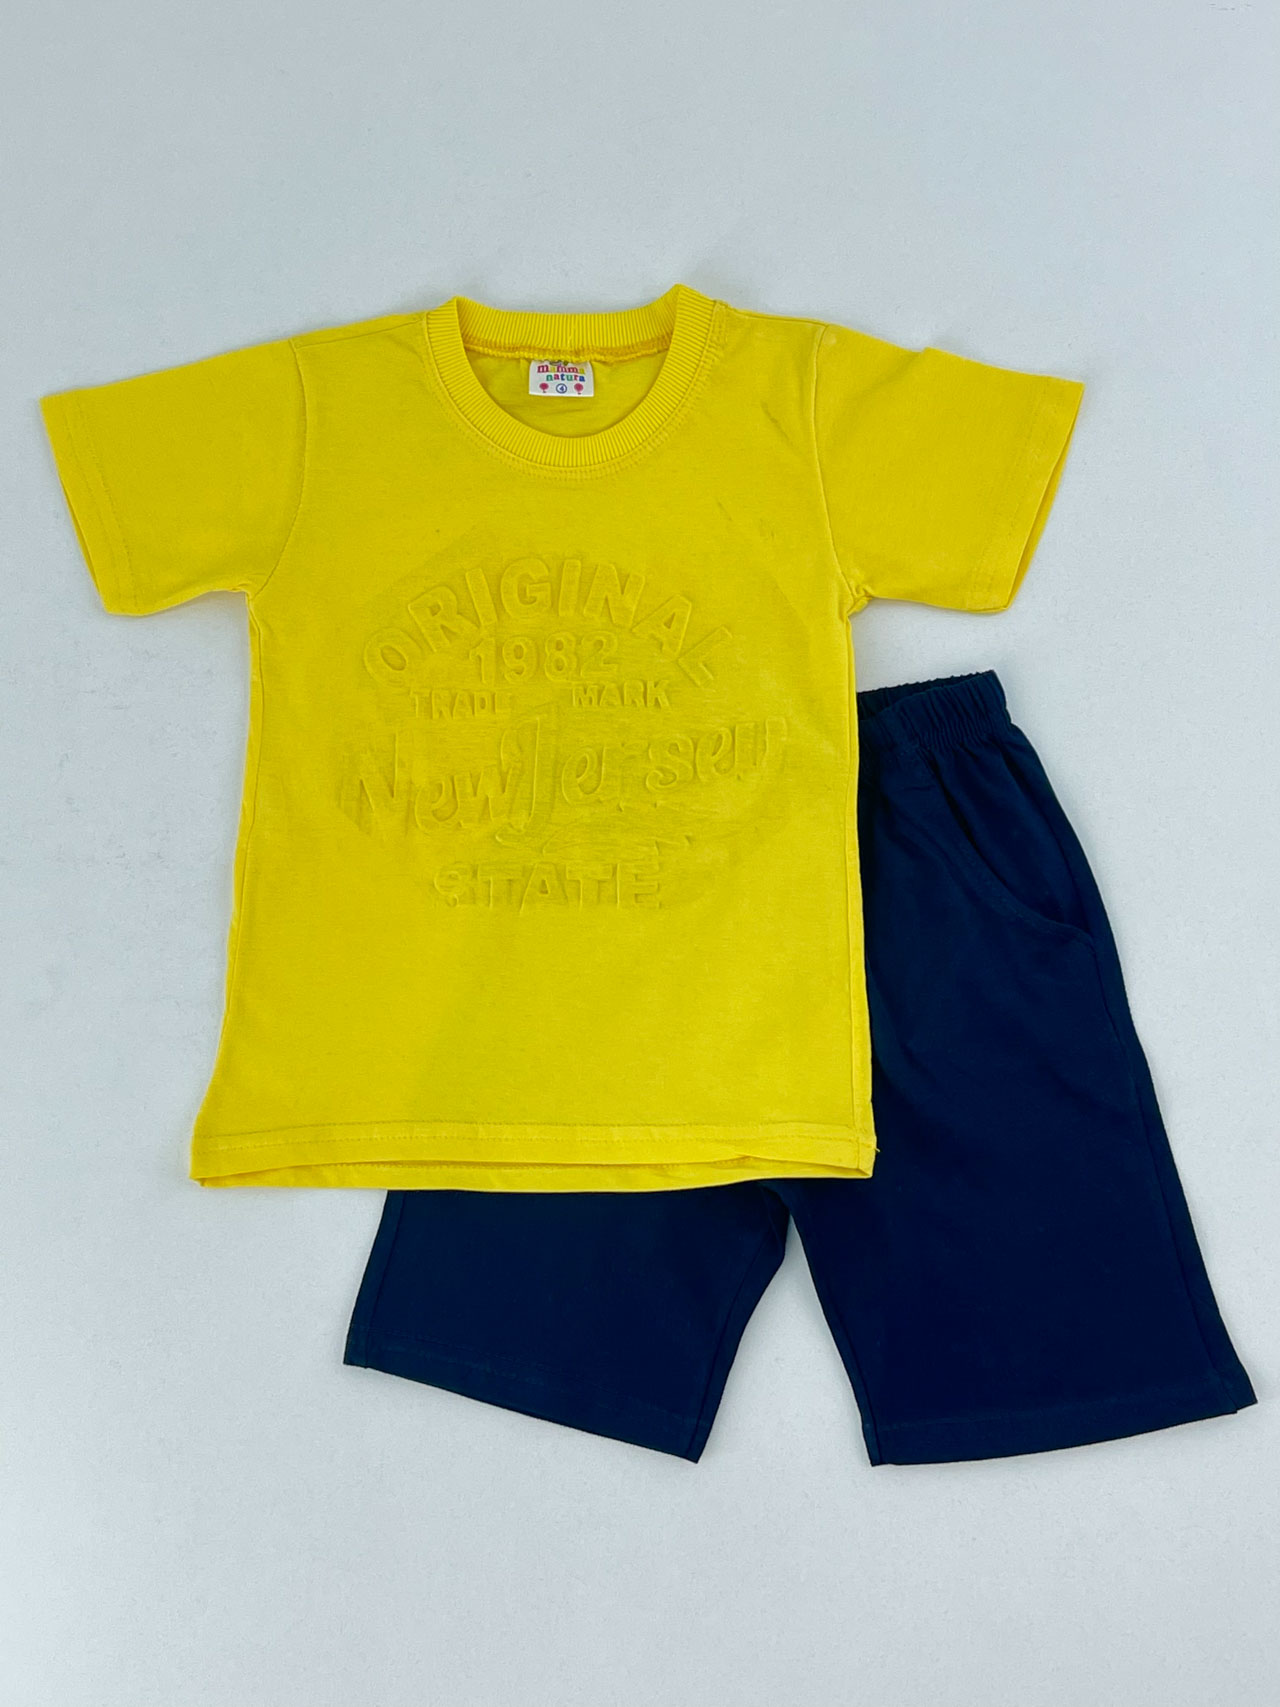 Σετ αγόρι μπλούζα-σορτς κωδ. 18500 μπροστινή όψη κίτρινο-μπλε